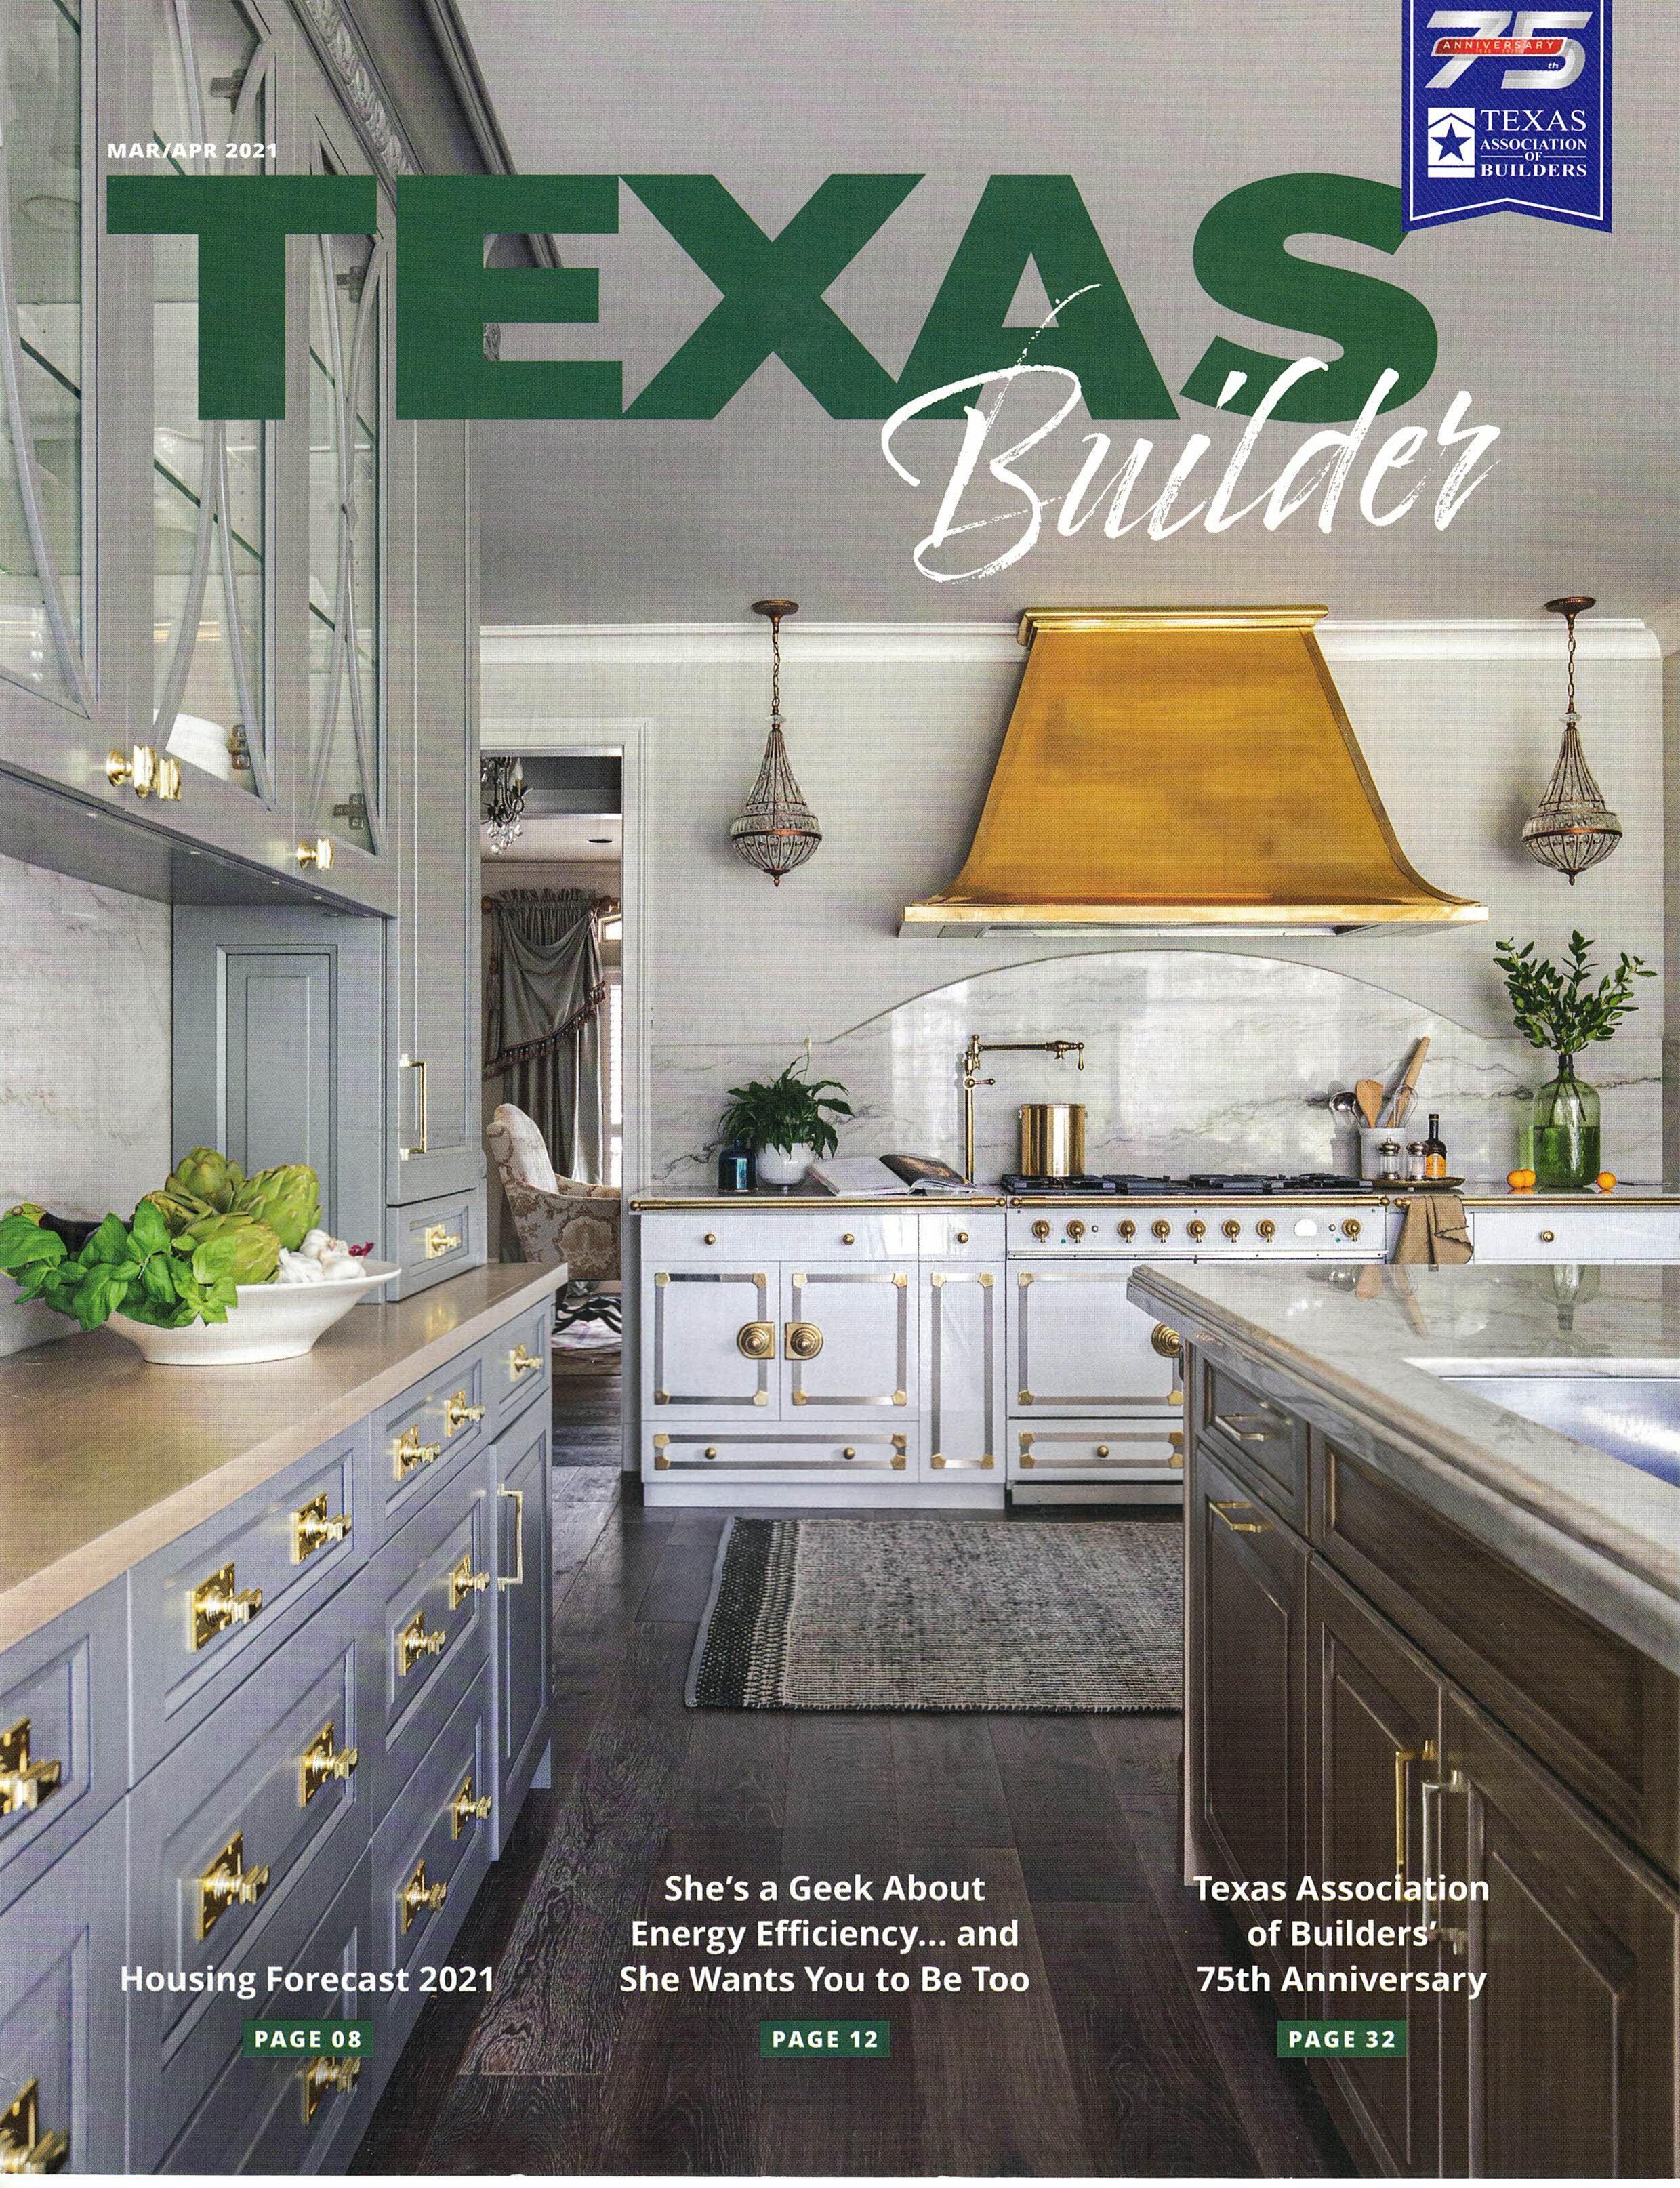 Texas Builder 3-4 2021 cover.jpg